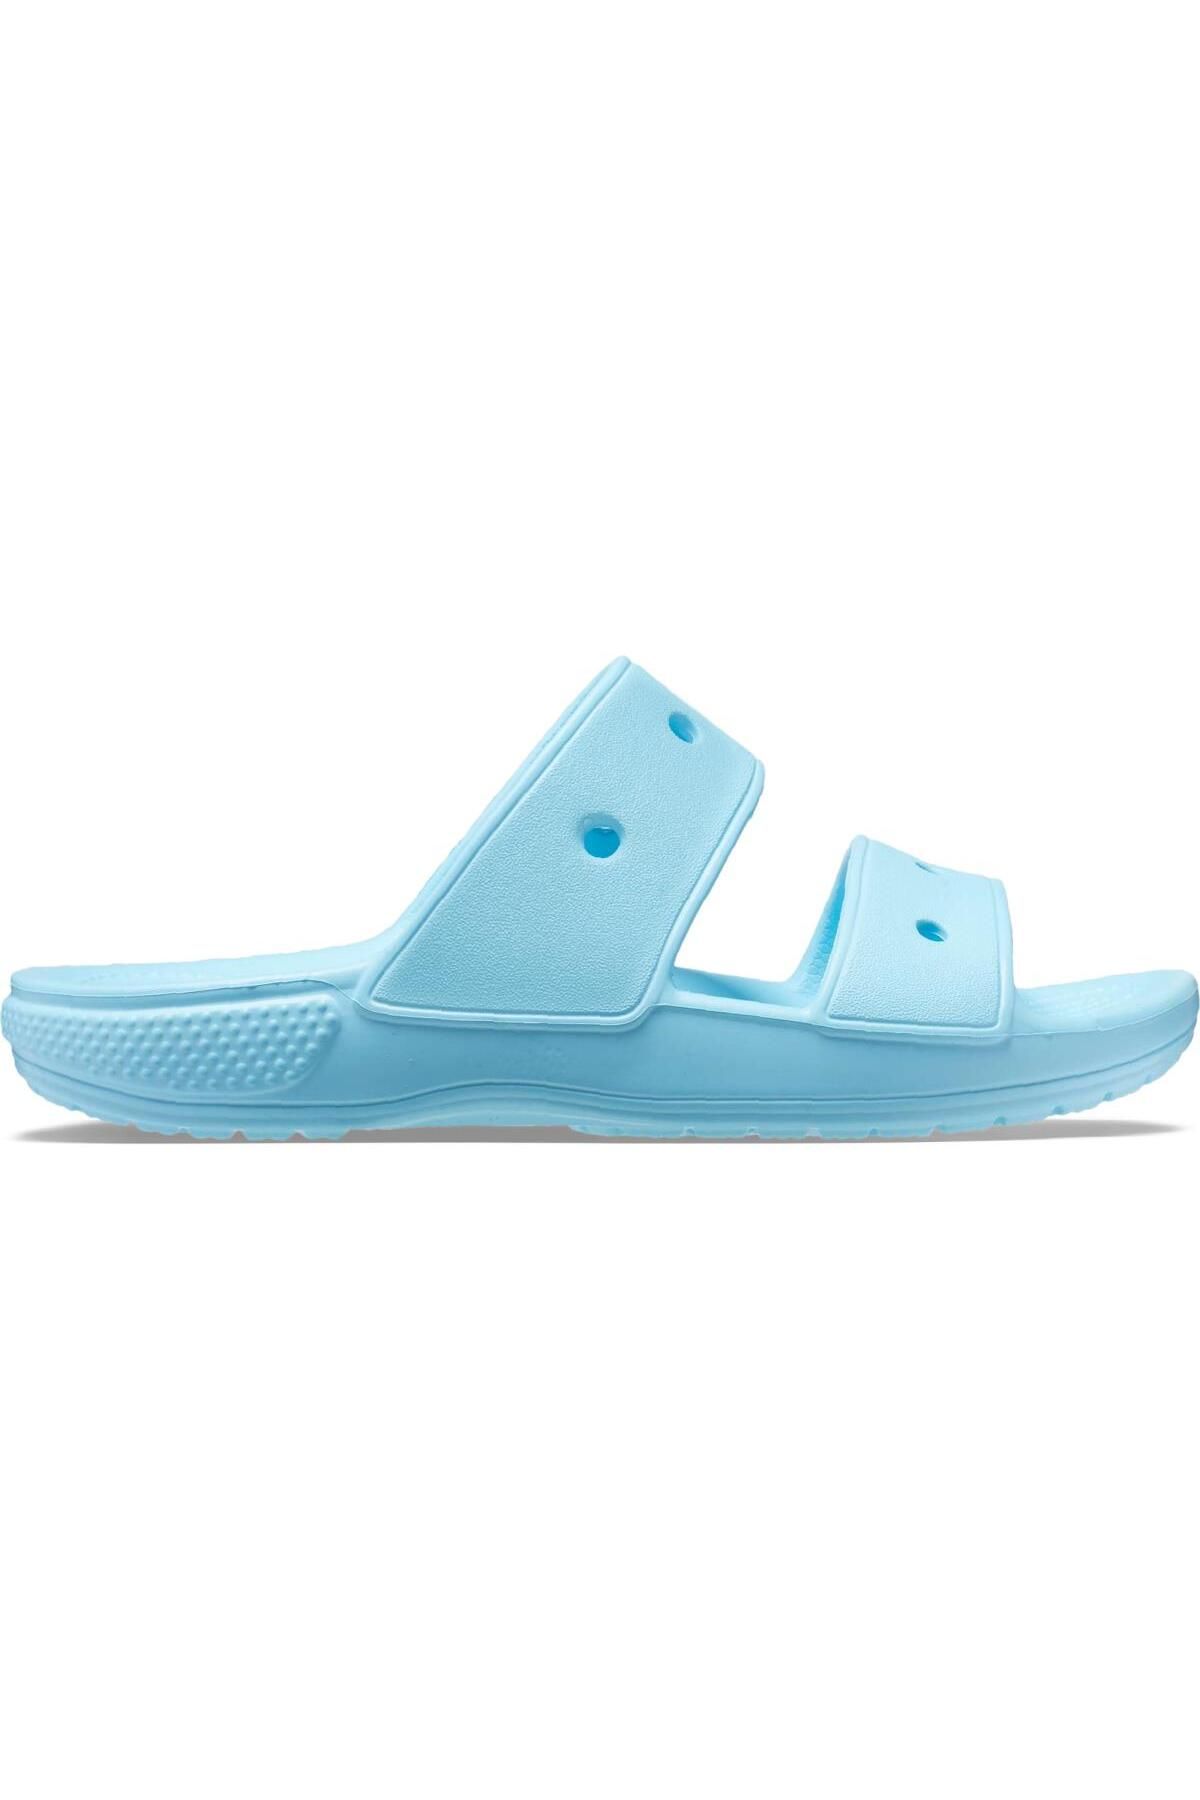 Crocs Classic Sandals Unisex Terlik 206761-411 Arctic